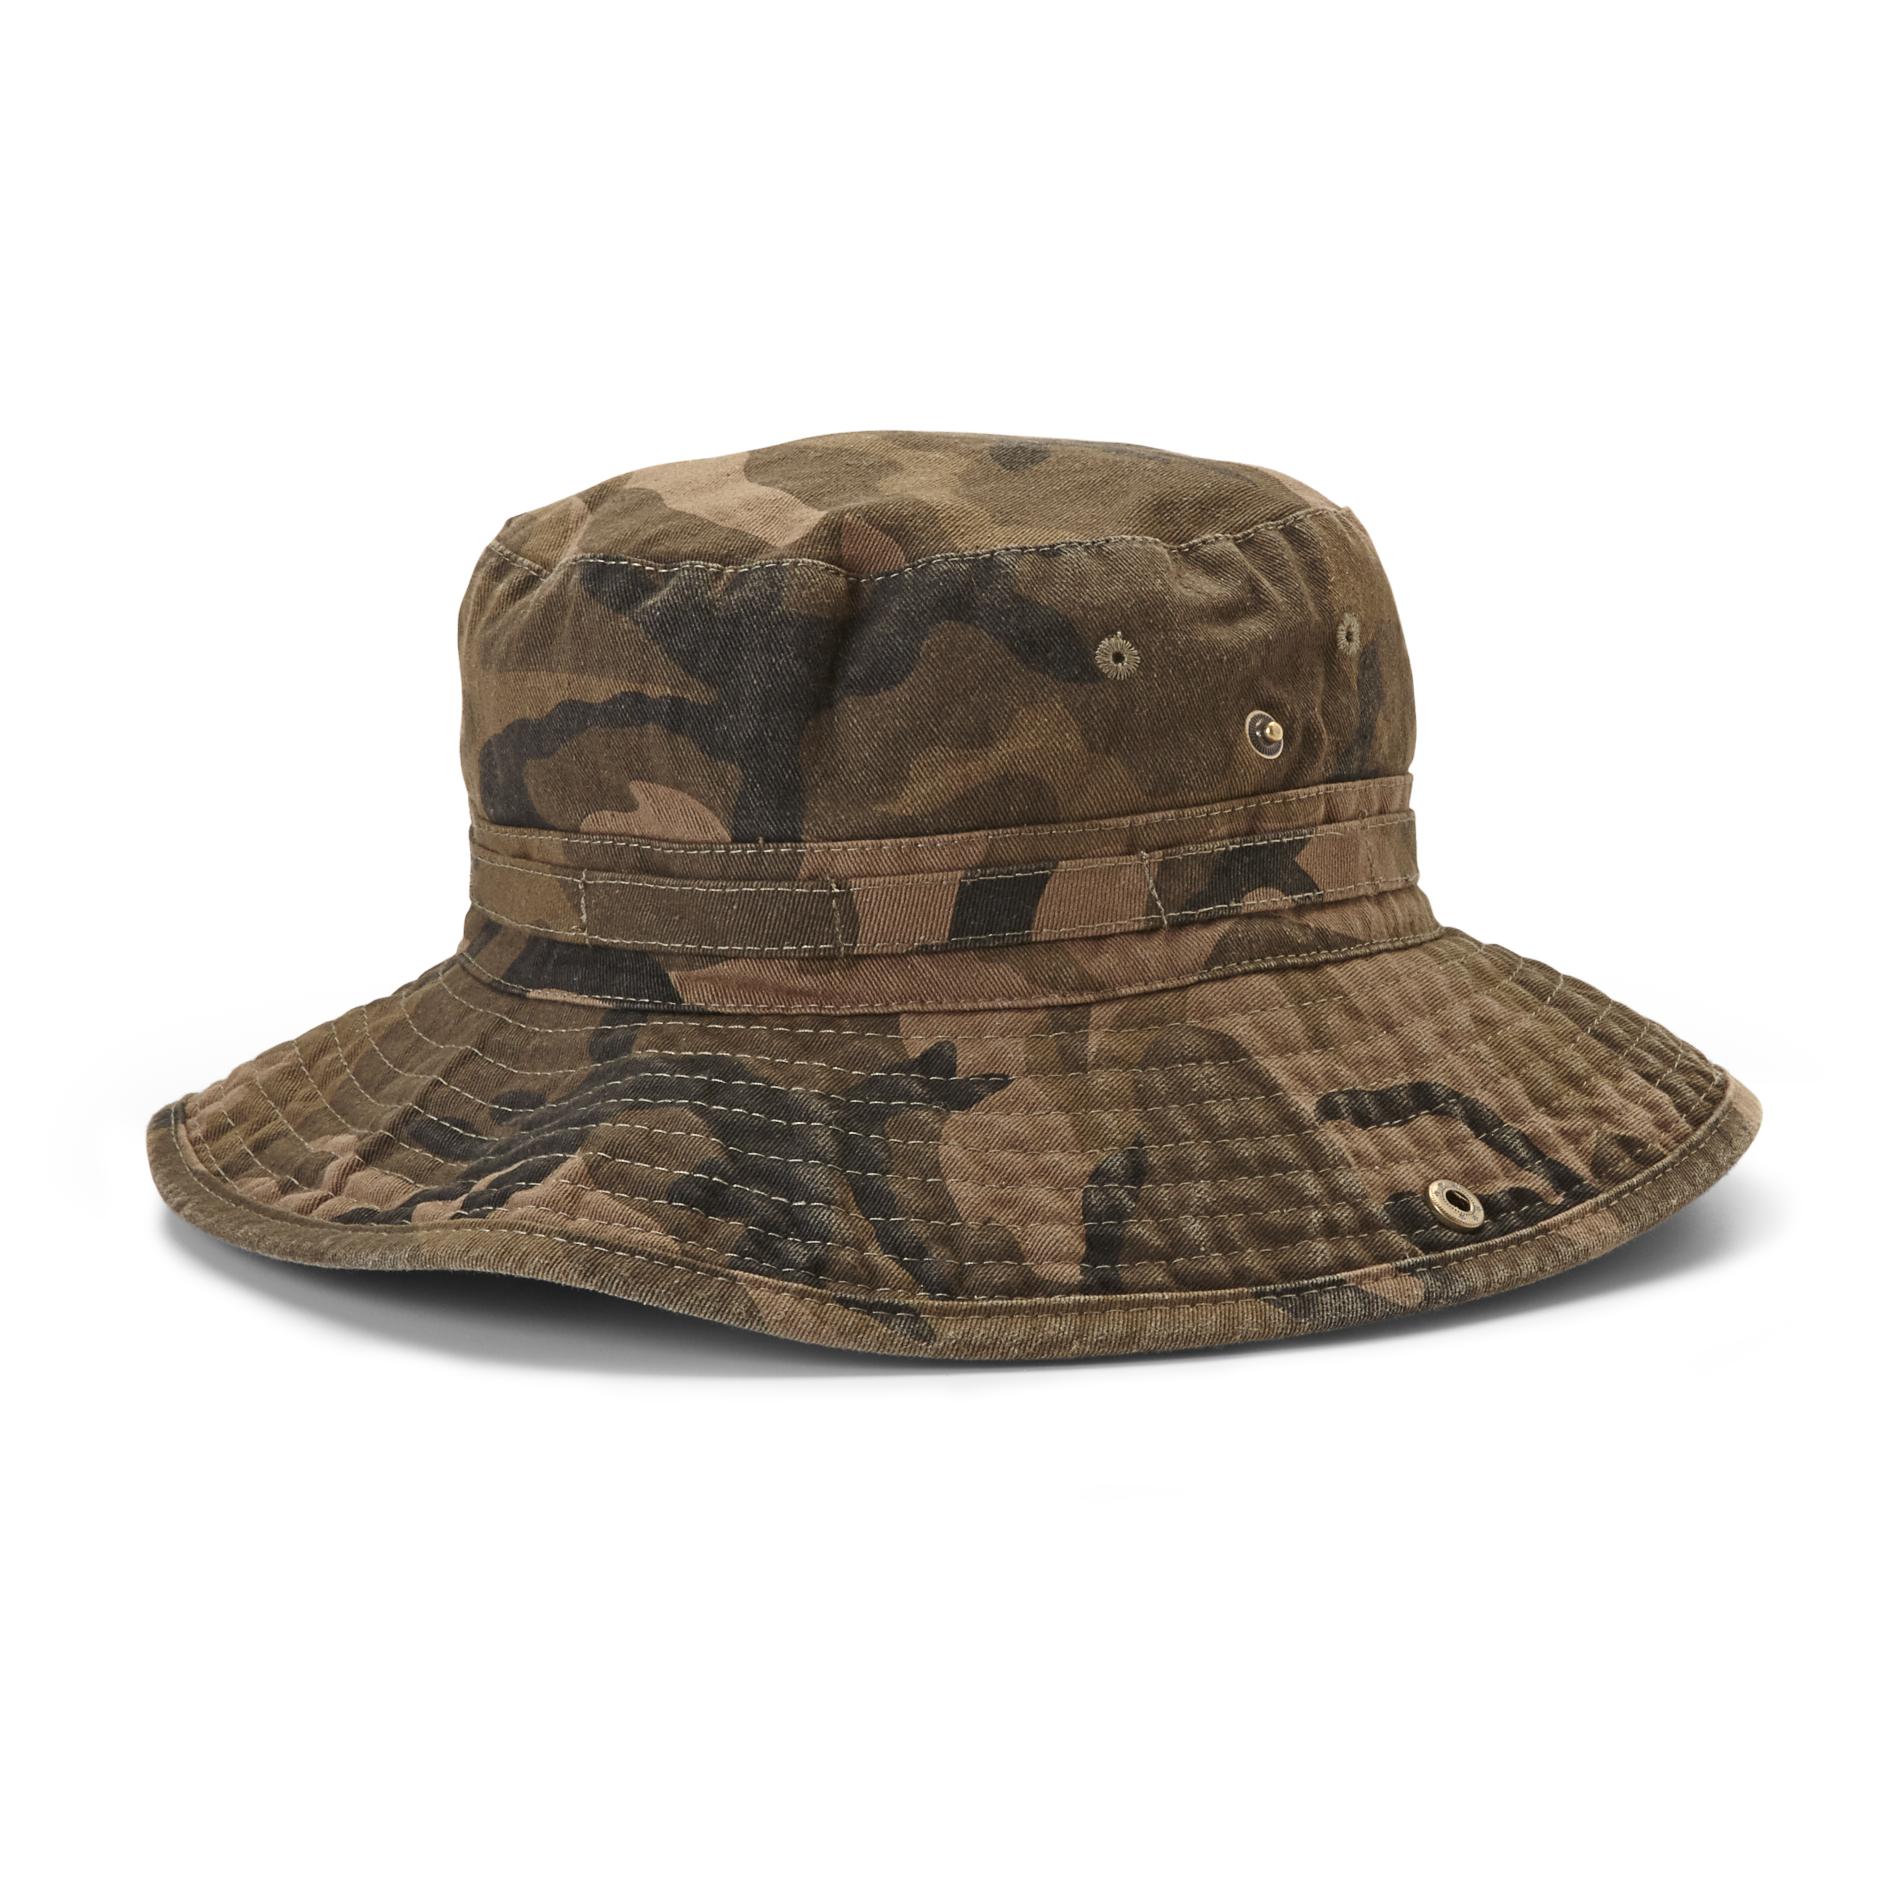 Men's Canvas Boonie Hat - Camouflage